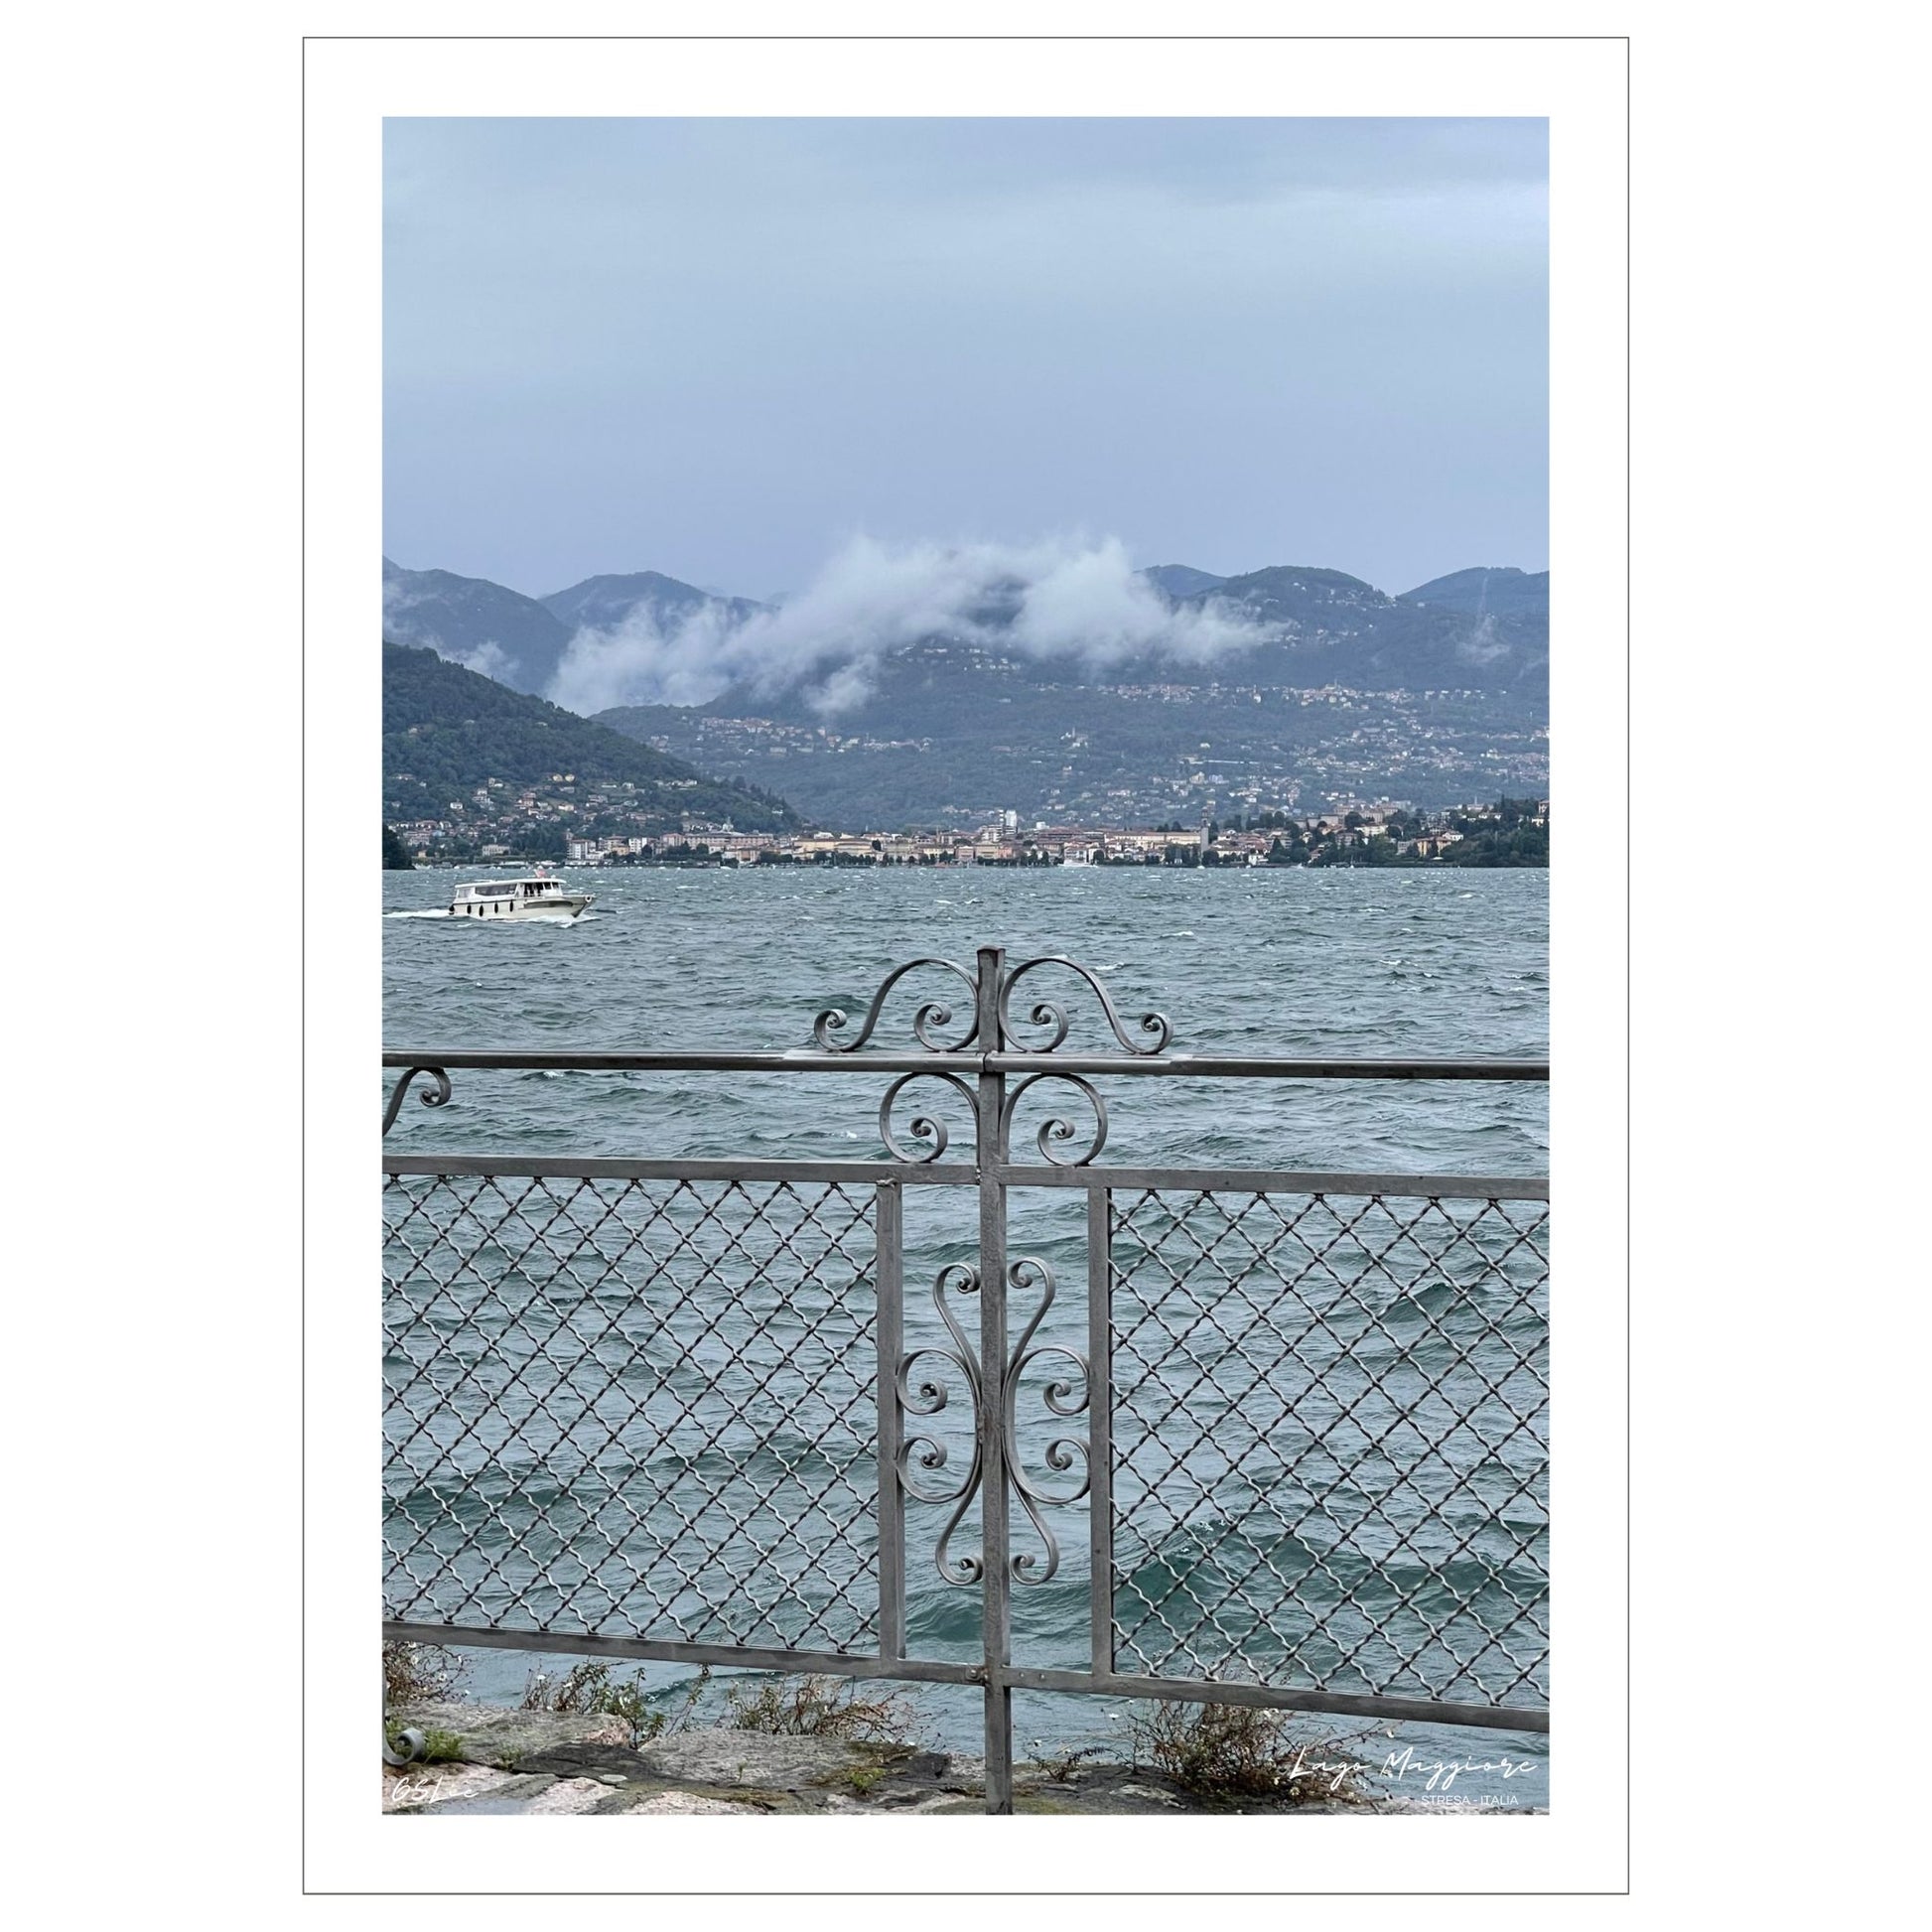 En regntung og vindfull augustdag i Stresa ved Lago Magiore, Piemonte. Det er lavt skydekke og bølger på sjøen. Et gjerde i smijern skiller parken og sjøen. I bakkant skimtes Alpene og byen Verbania.  